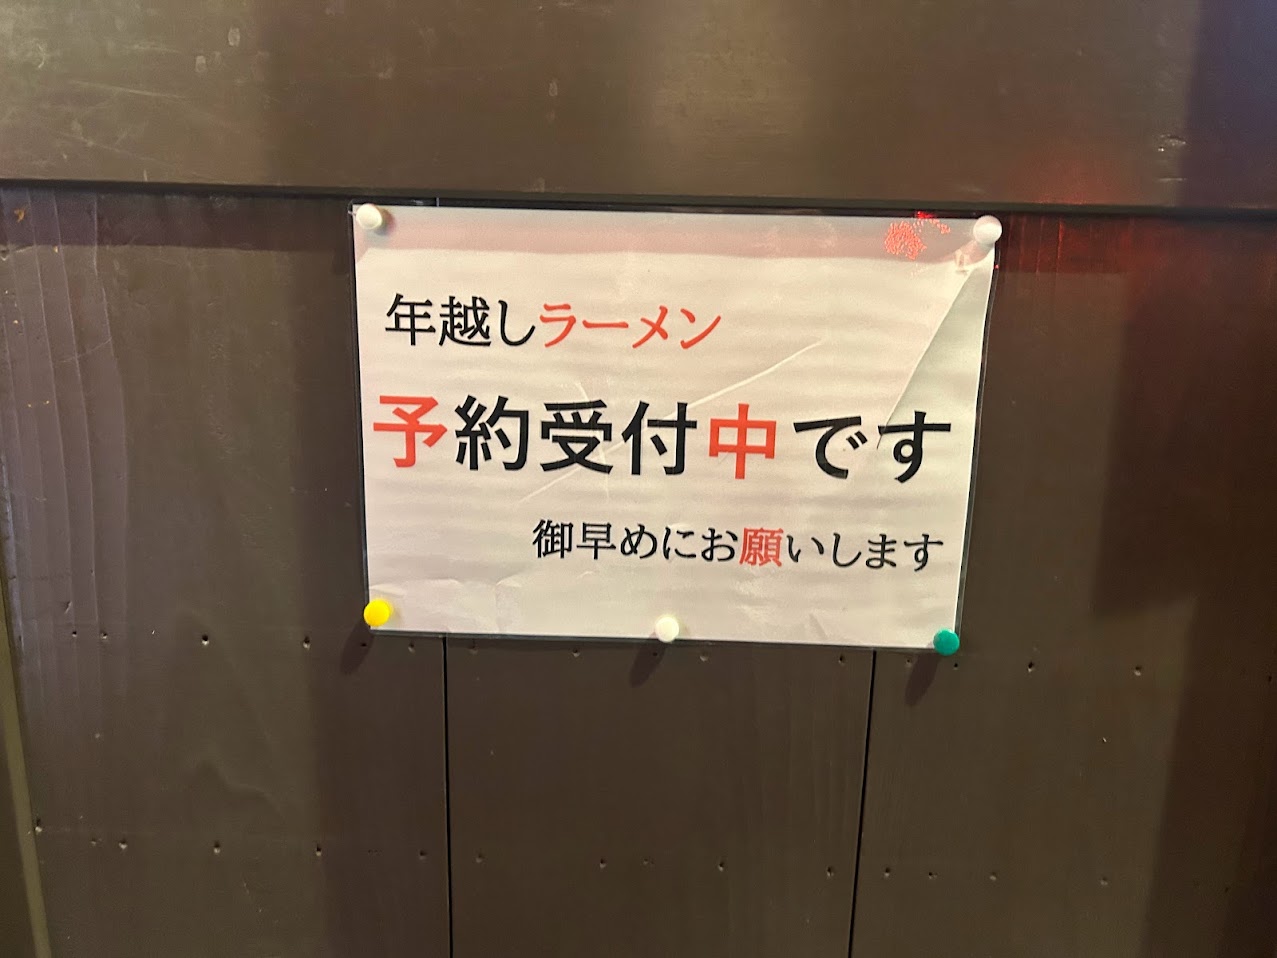 麵屋7.5㎐平野店年越しラーメンのお知らせ